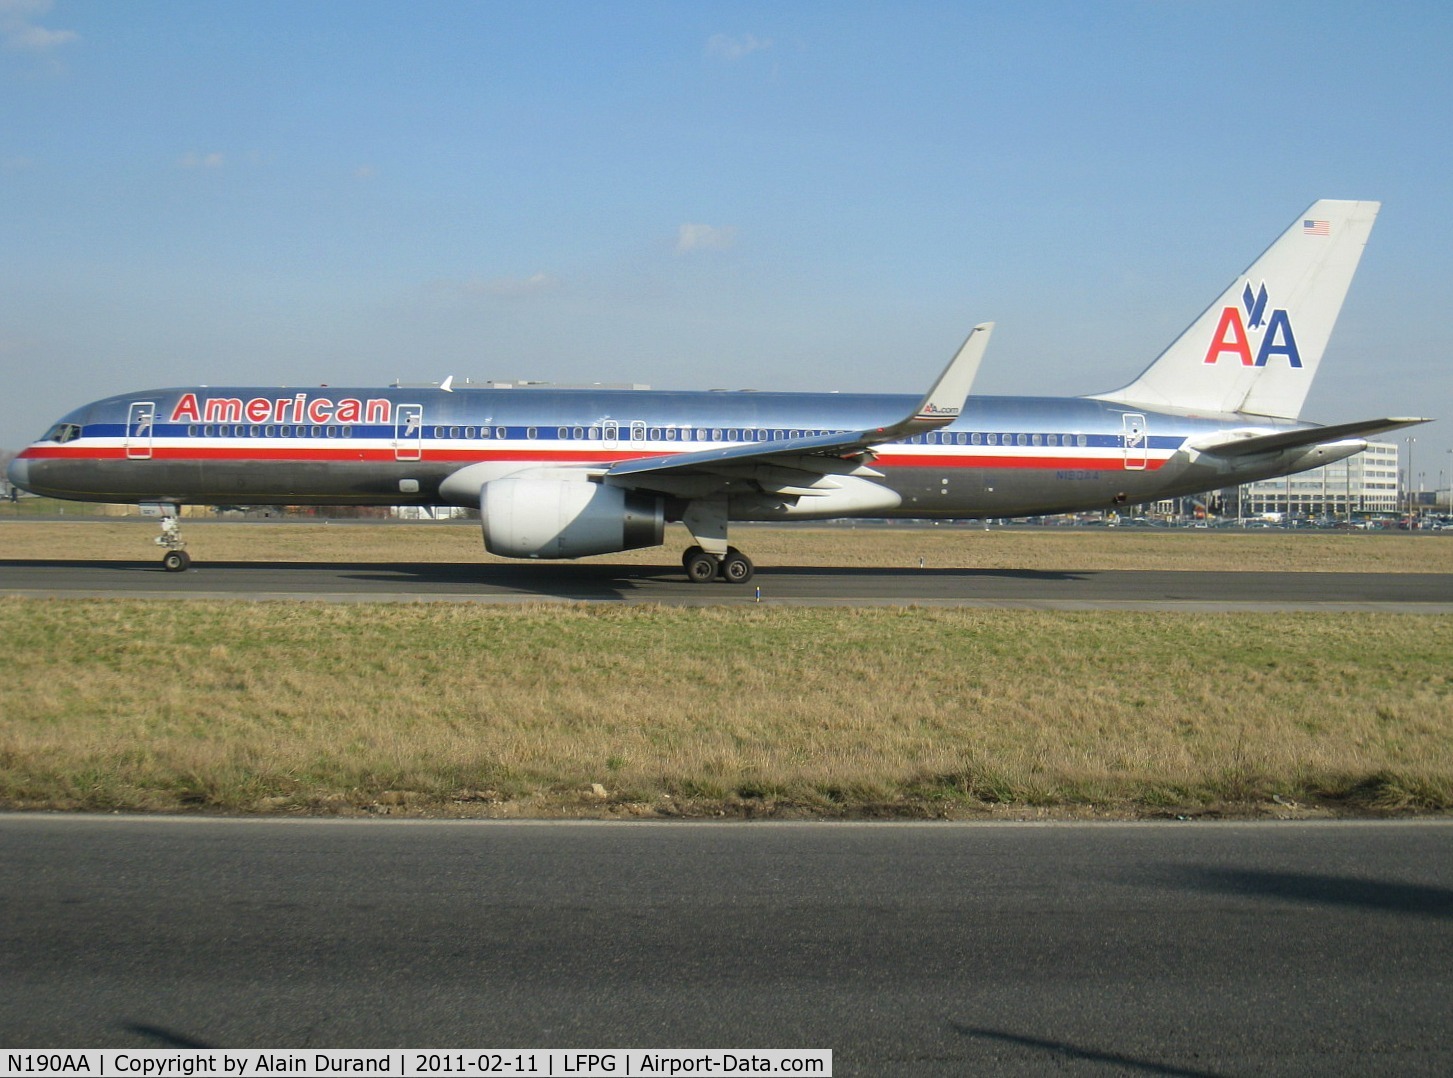 N190AA, 2001 Boeing 757-223 C/N 32384, Winglets were added on c/n 973 in 04/2007.